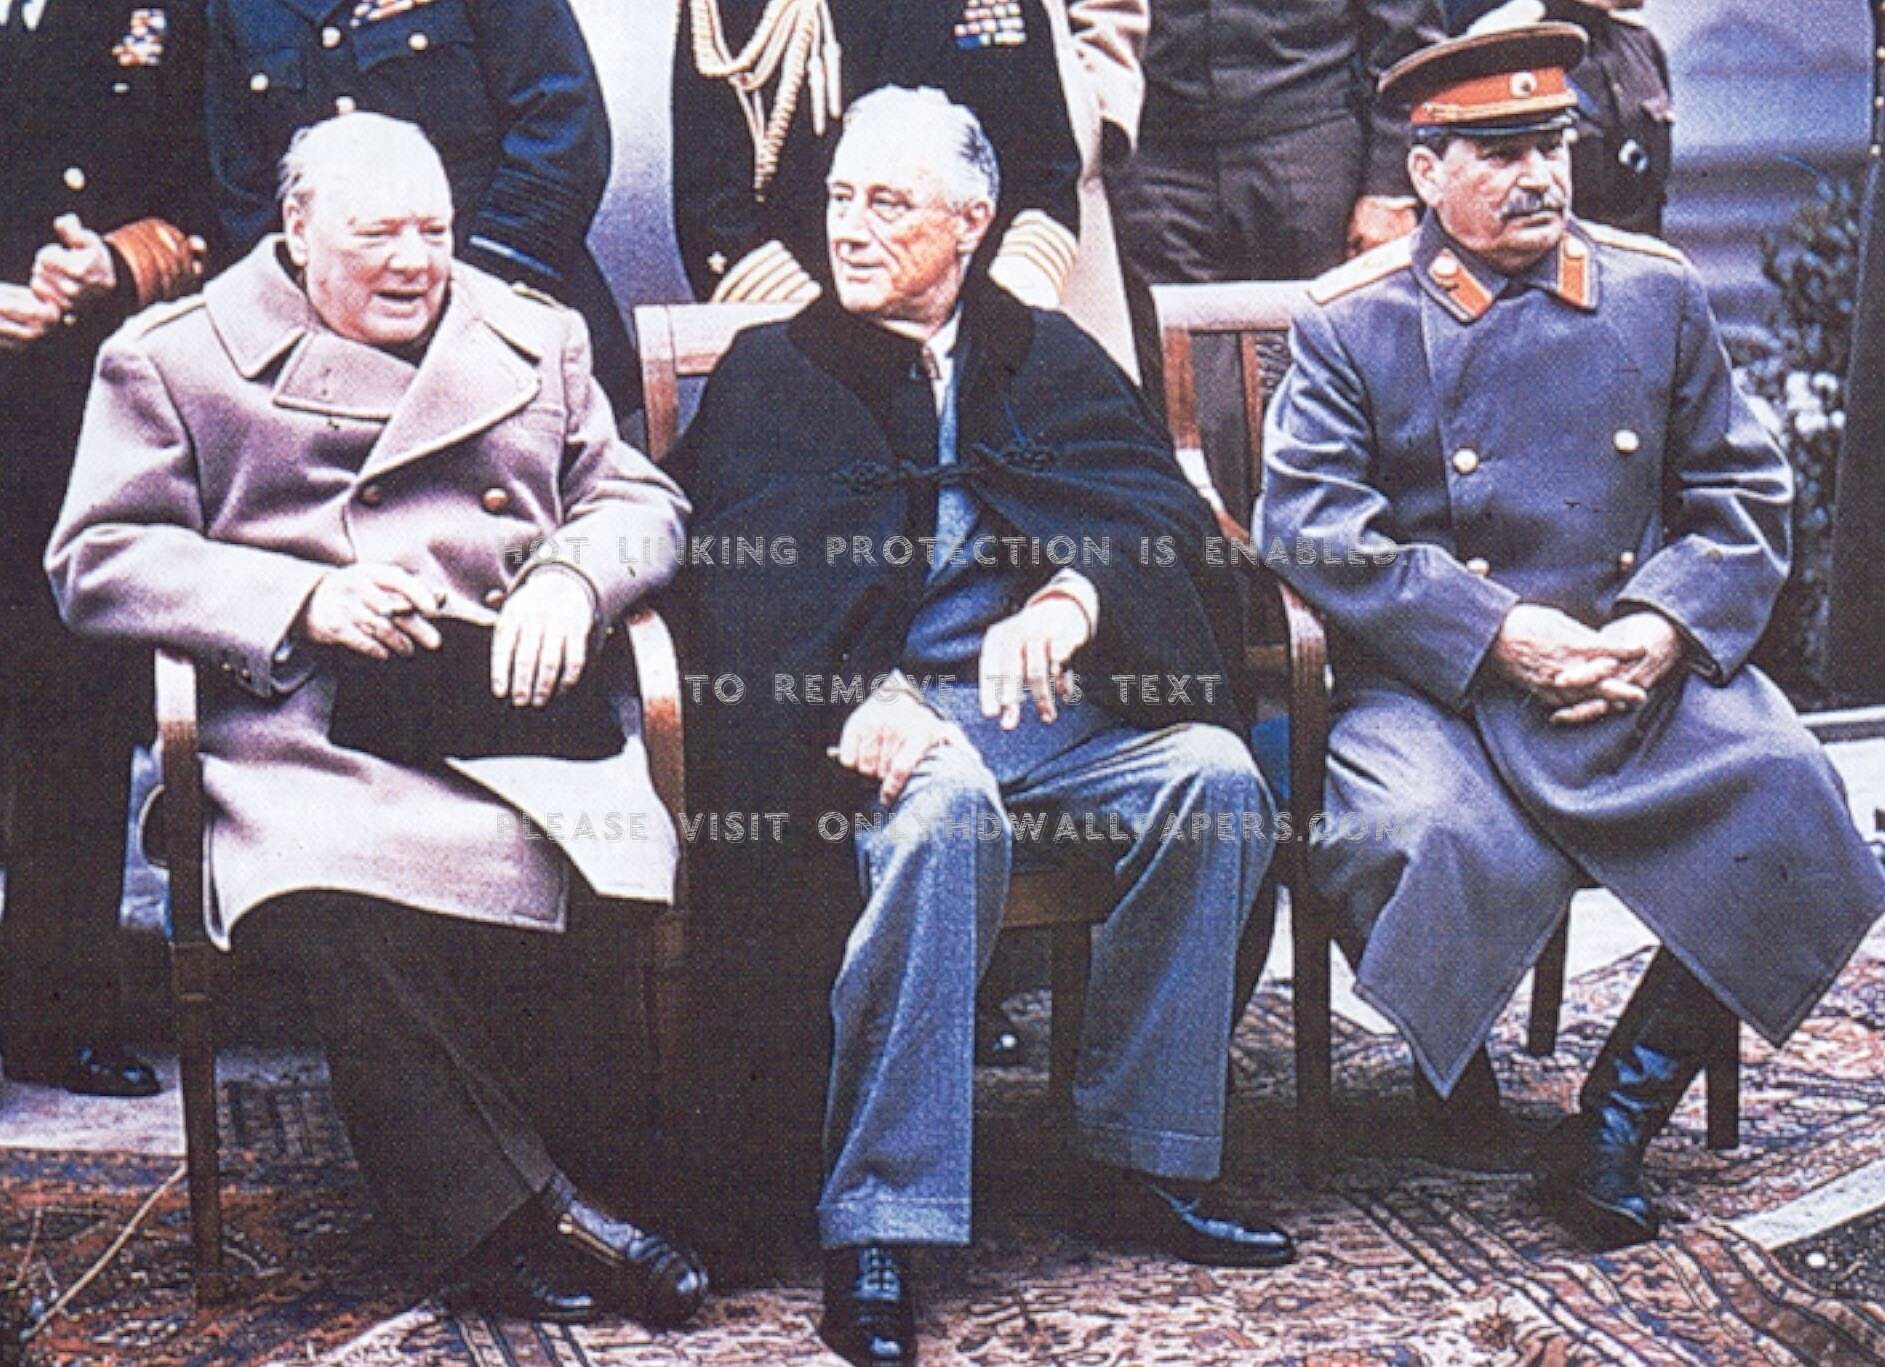 Franklin Roosevelt Yalta , HD Wallpaper & Backgrounds